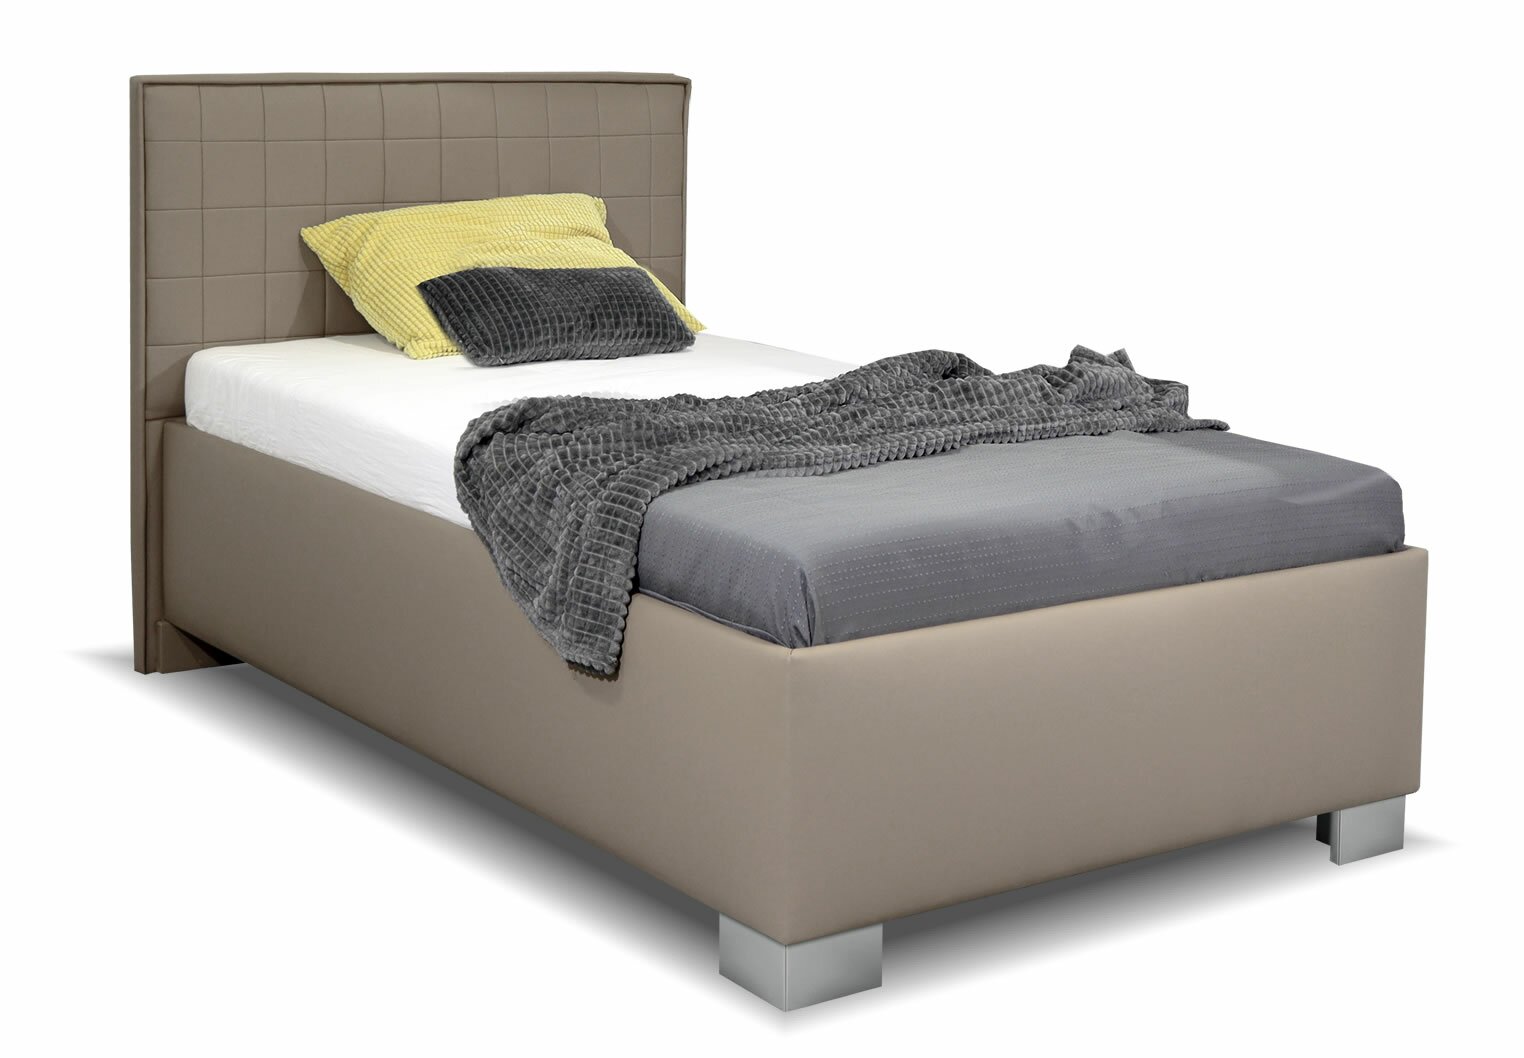 Čalouněná postel s úložným prostorem Belarona, 90x200